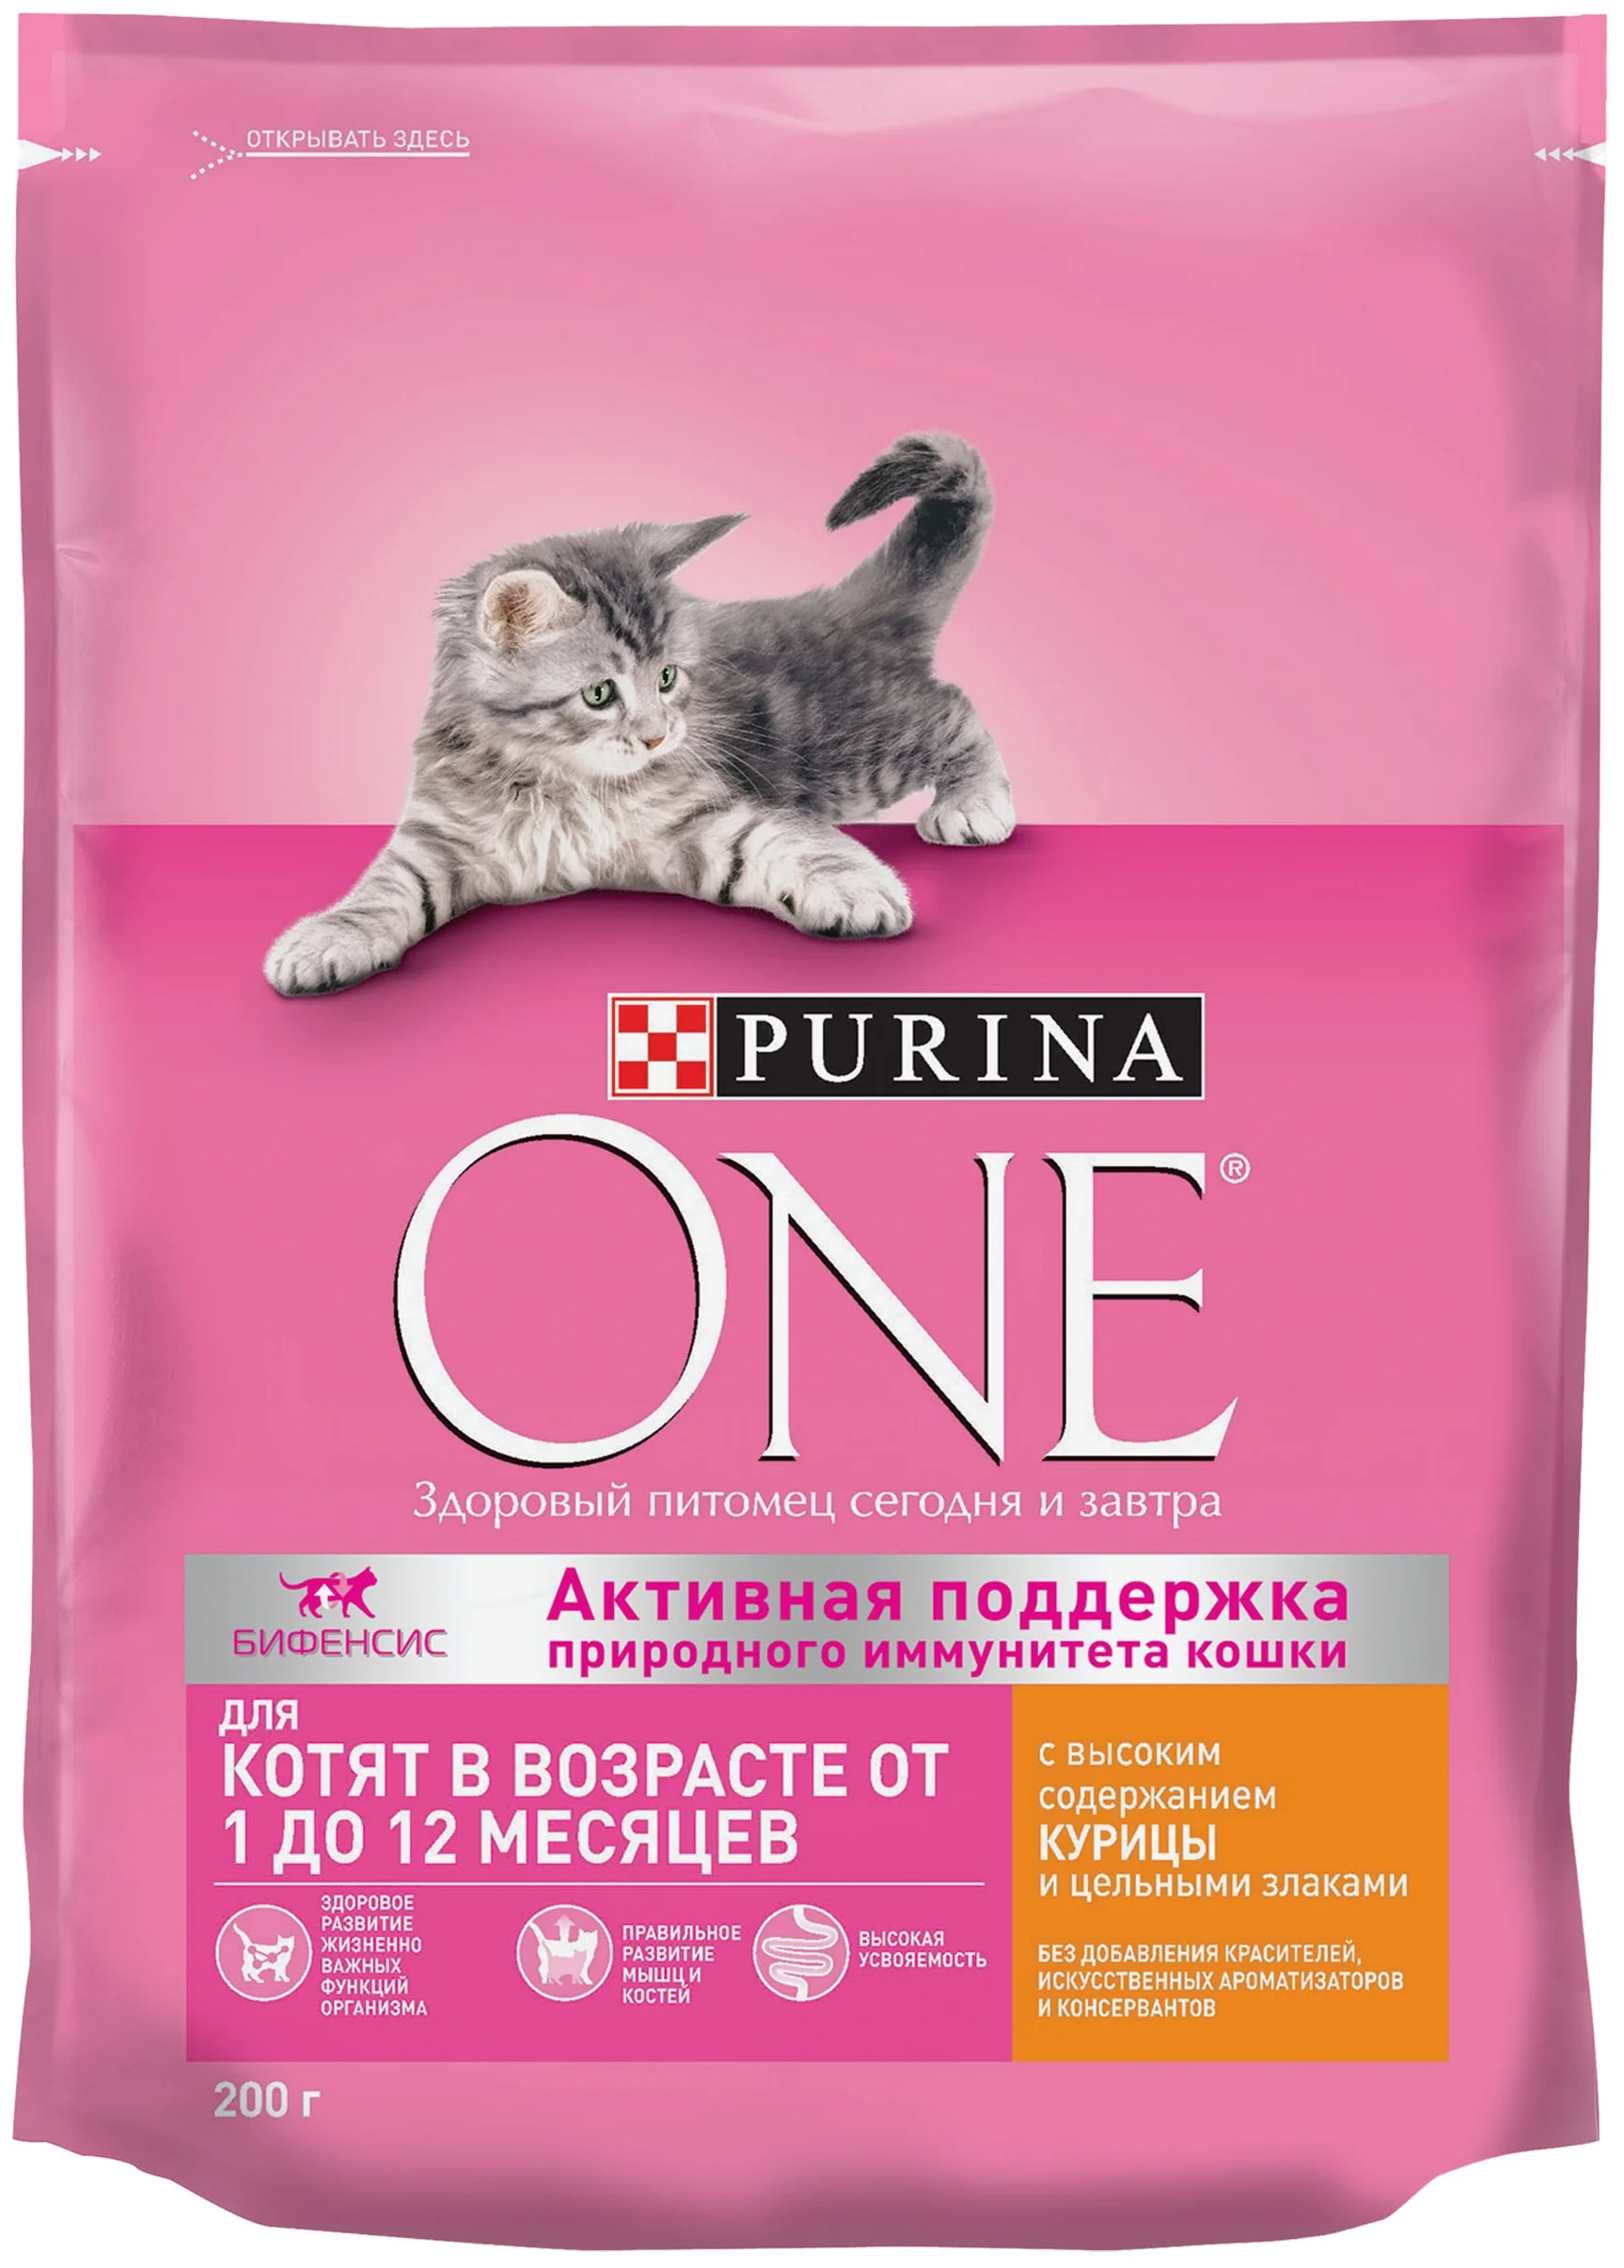 Purina ONE - особые потребности: для беременных / кормящих кошек